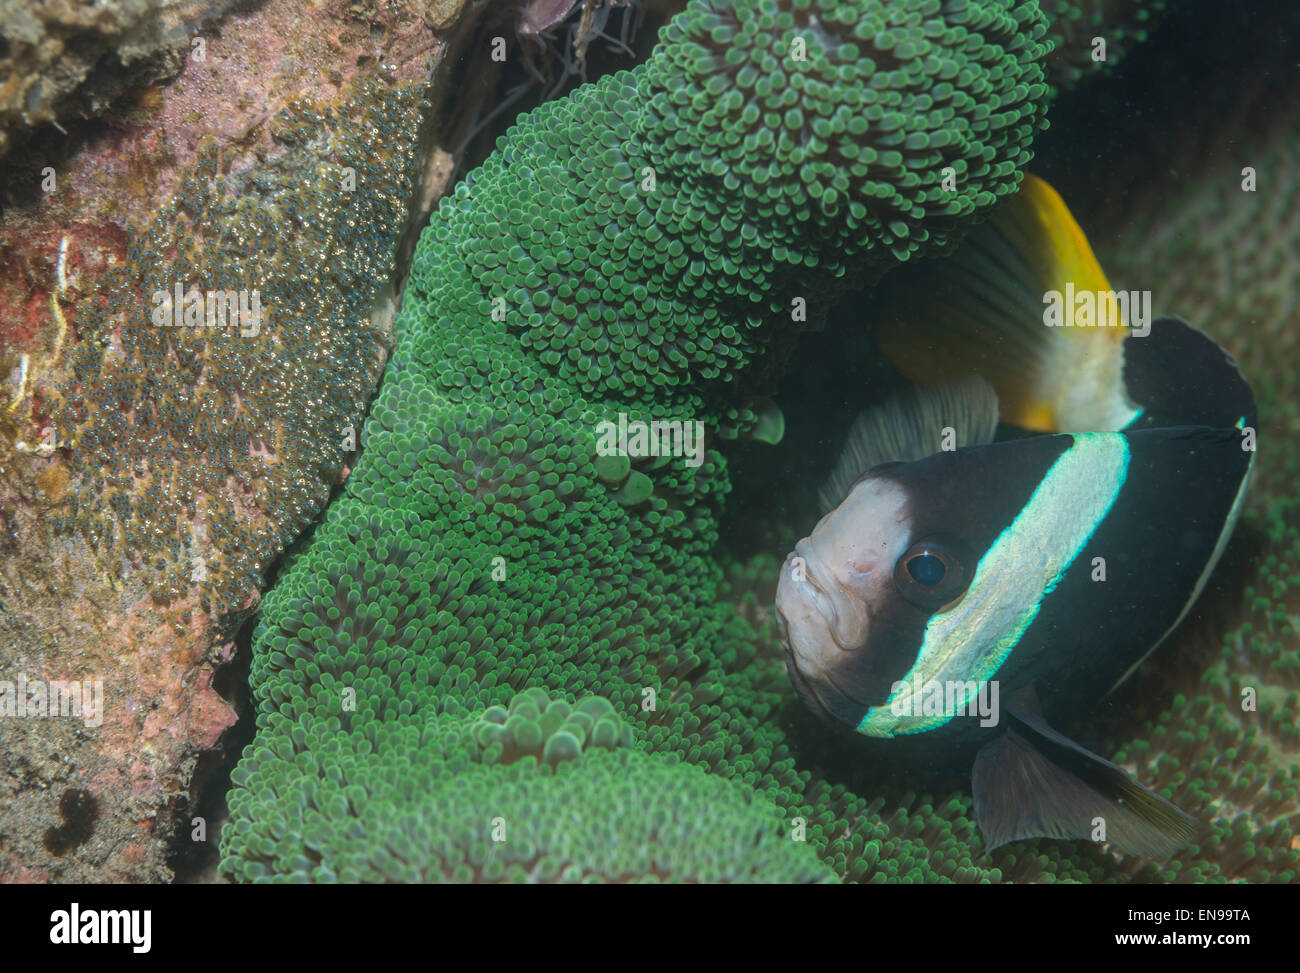 Clarks Anemonenfische in der Nähe von Eizellen Stockfoto